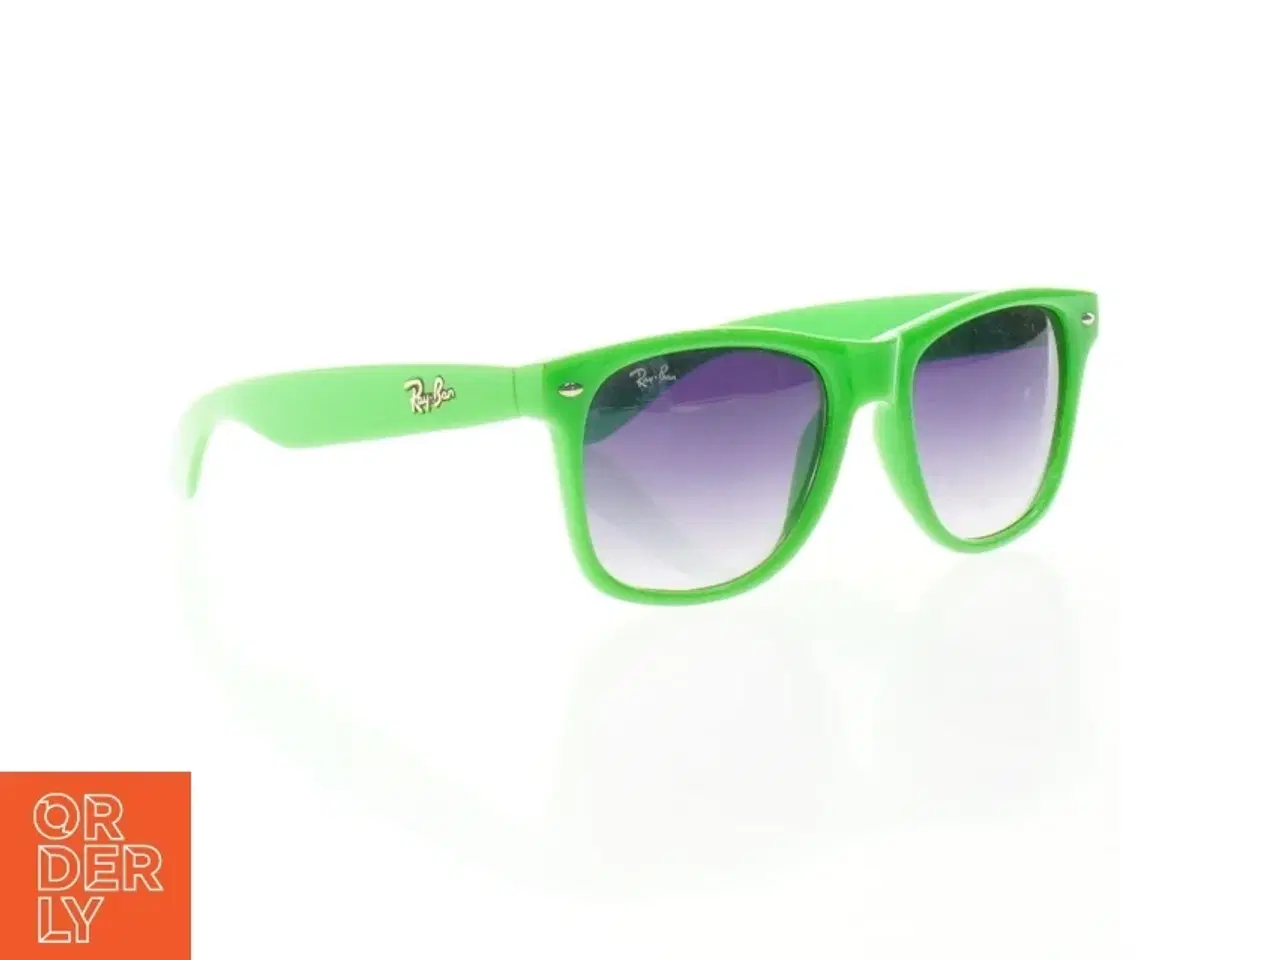 Billede 1 - Grønne Ray-Ban solbriller fra Ray-Ban (str. 14 cm)